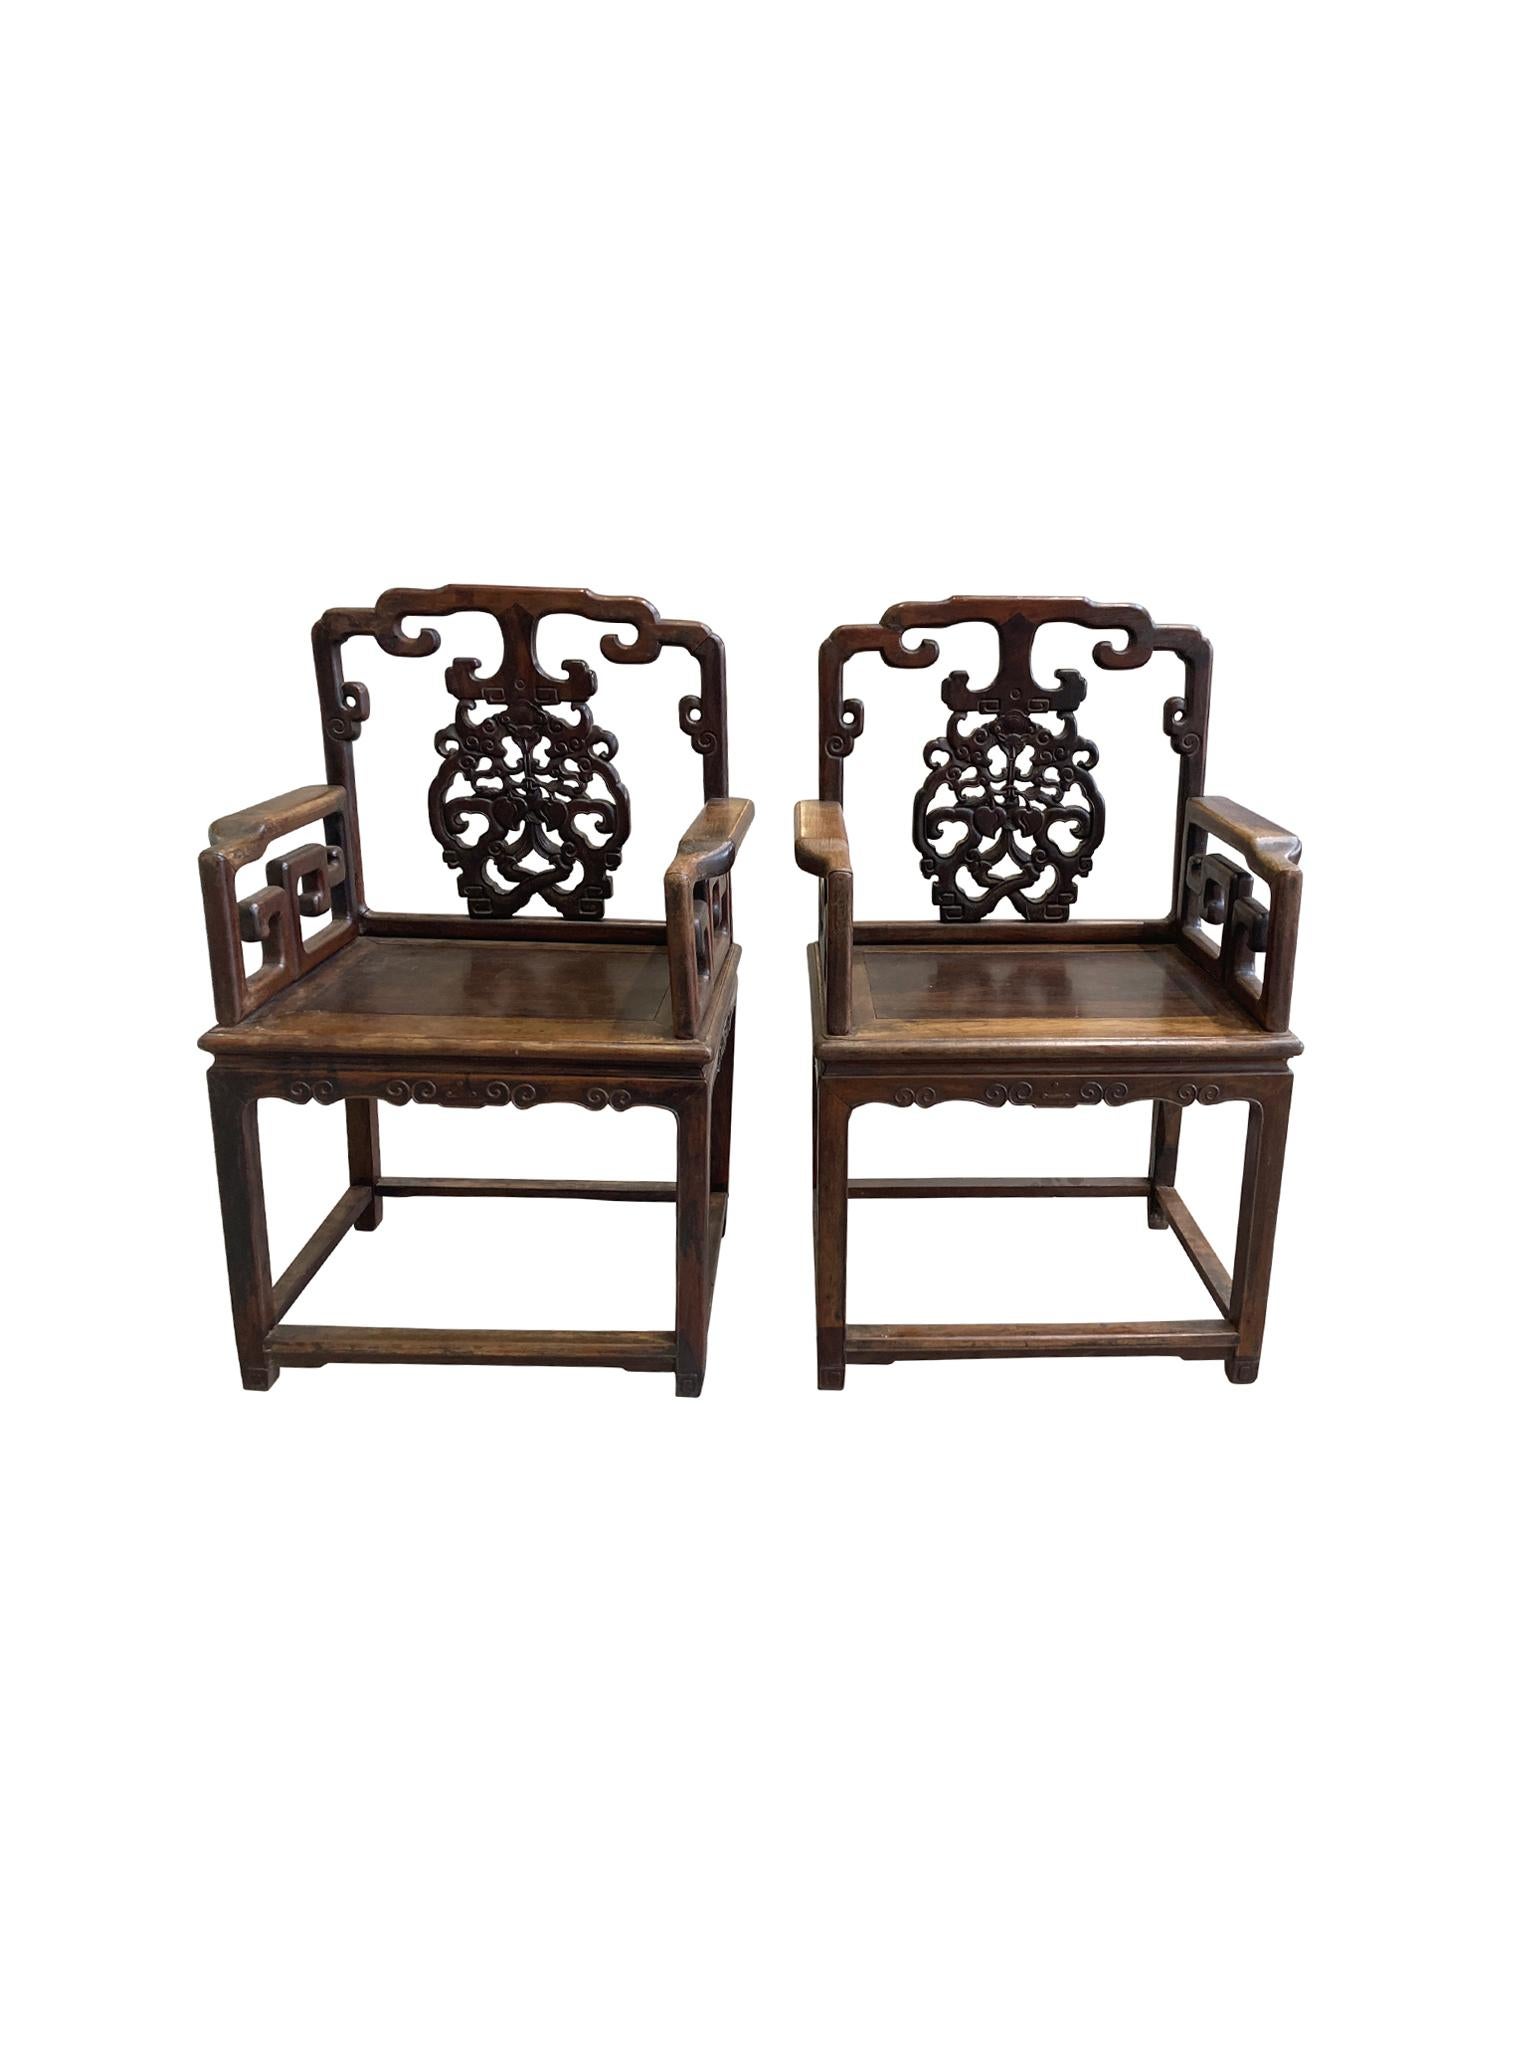 Paire de fauteuils chinois anciens en bois de rose, peut-être en bois de rose Huanghuali, vers la fin du XIXe siècle. Le dos est décoré de motifs de fruits et de faune sculptés à la main. Nous aimons la combinaison de formes tourbillonnantes